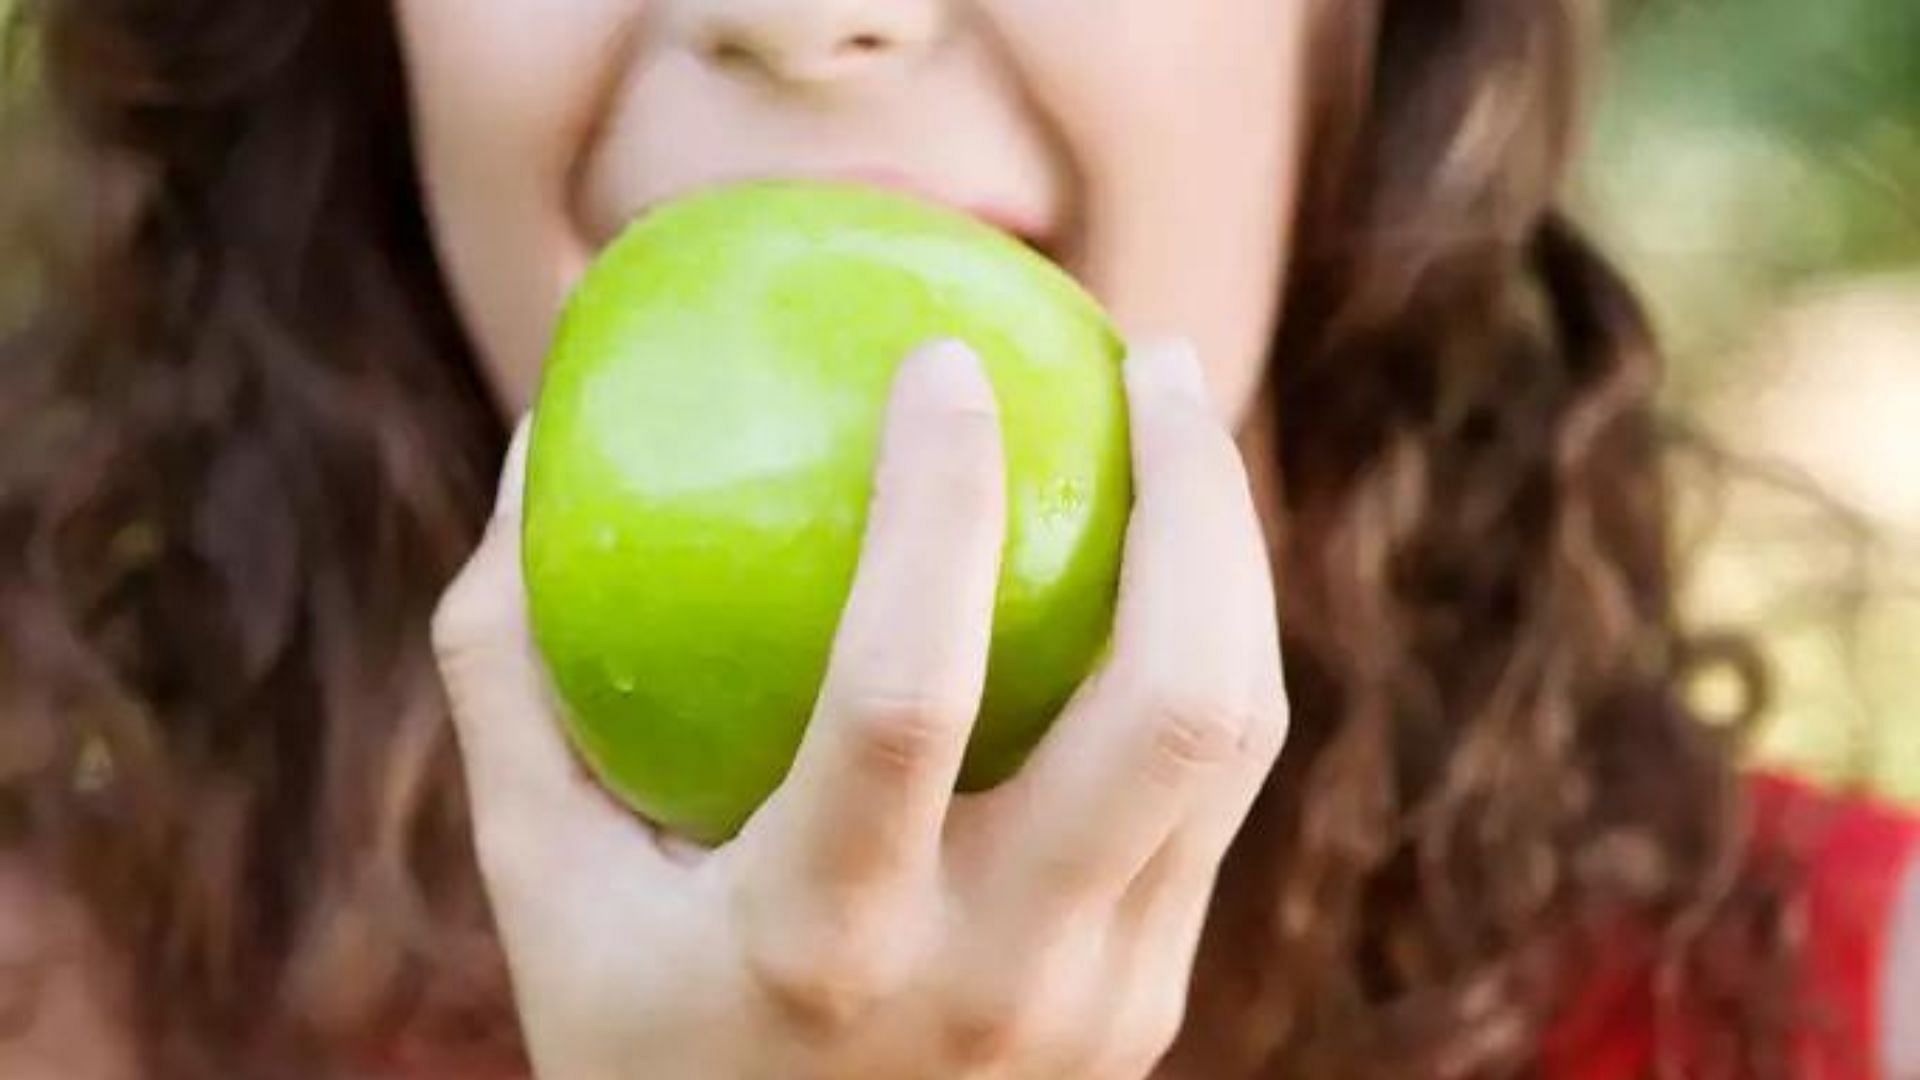 हरा सेब चबाना मौखिक स्वास्थ्य के लिए उत्तम!